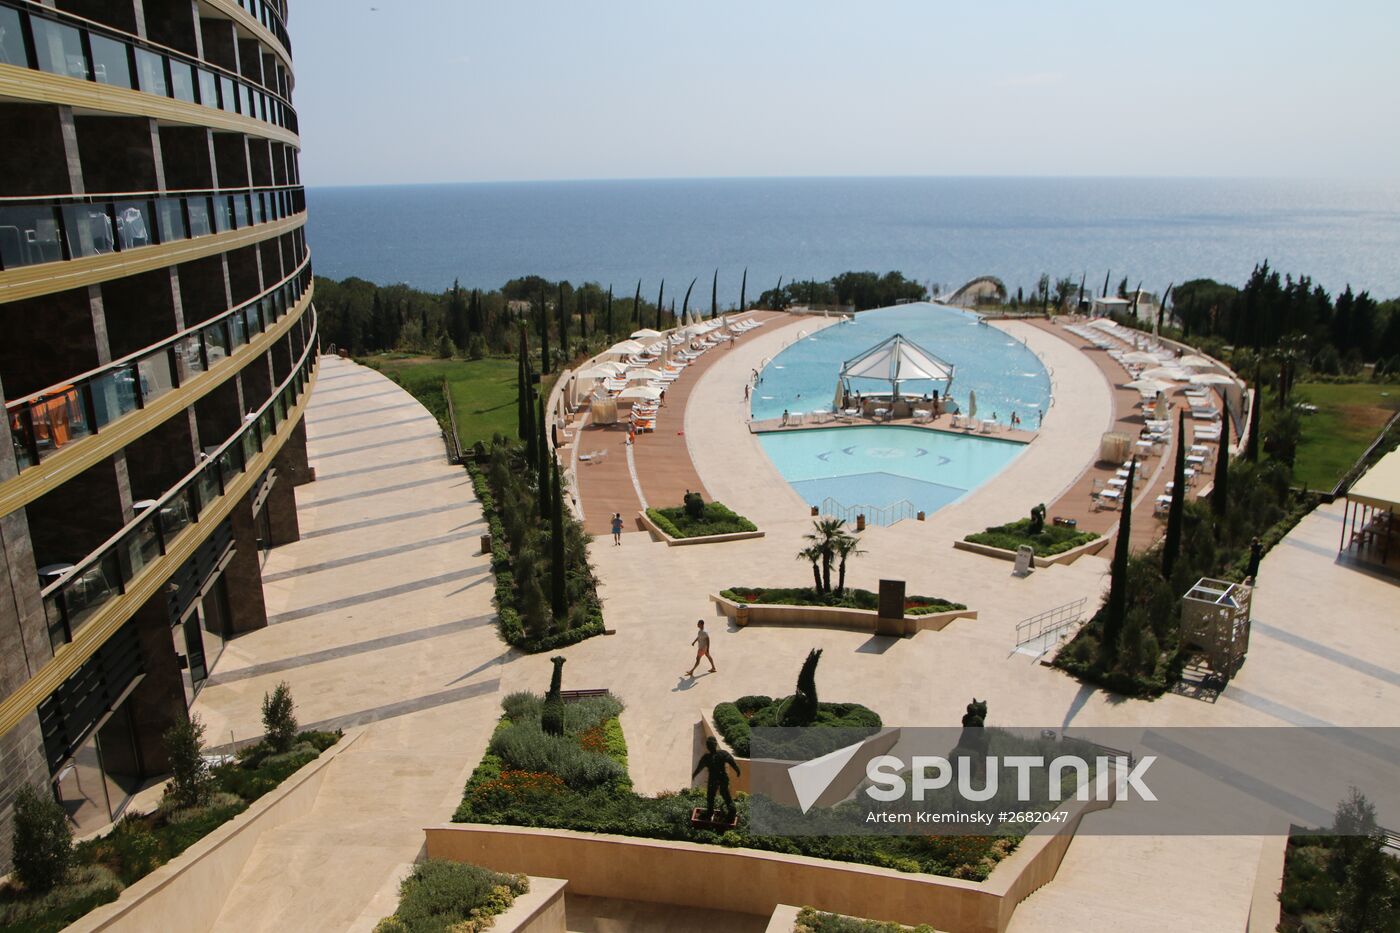 Five-star hotel Mriya Resort in Yalta